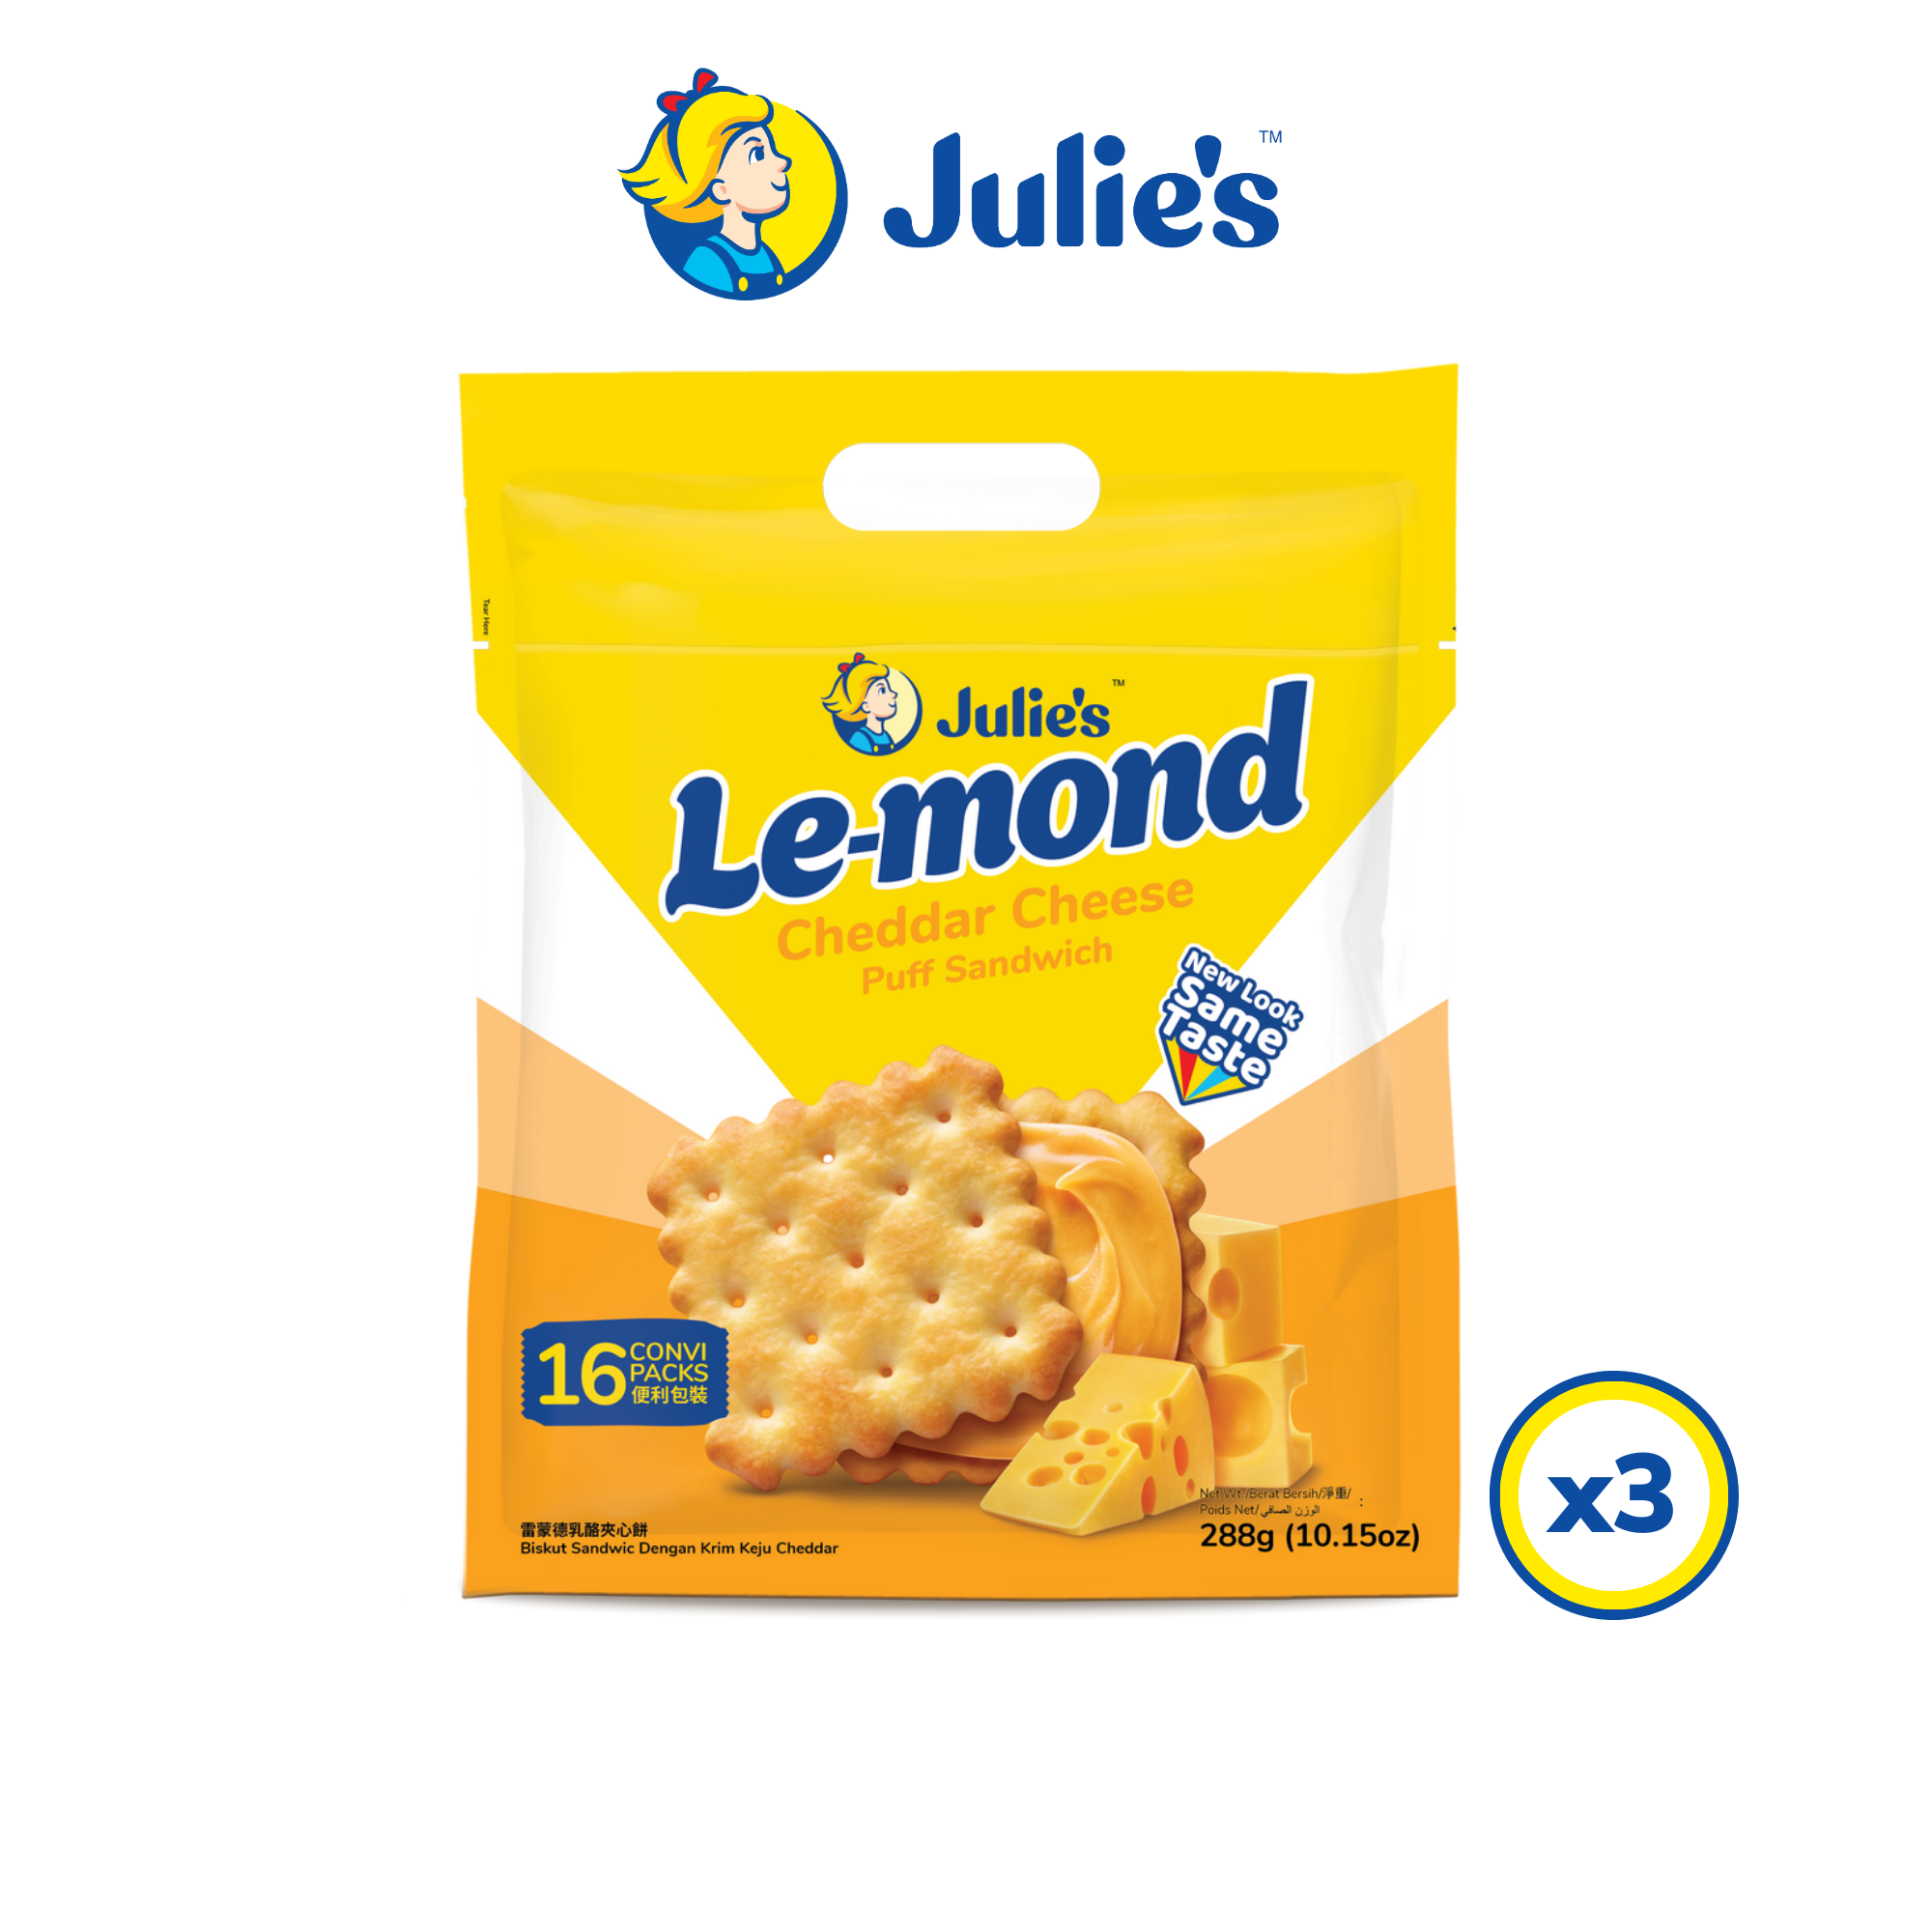 Julie's Le-mond Cheddar Cheese Puff Sandwich 288g x 3 packs